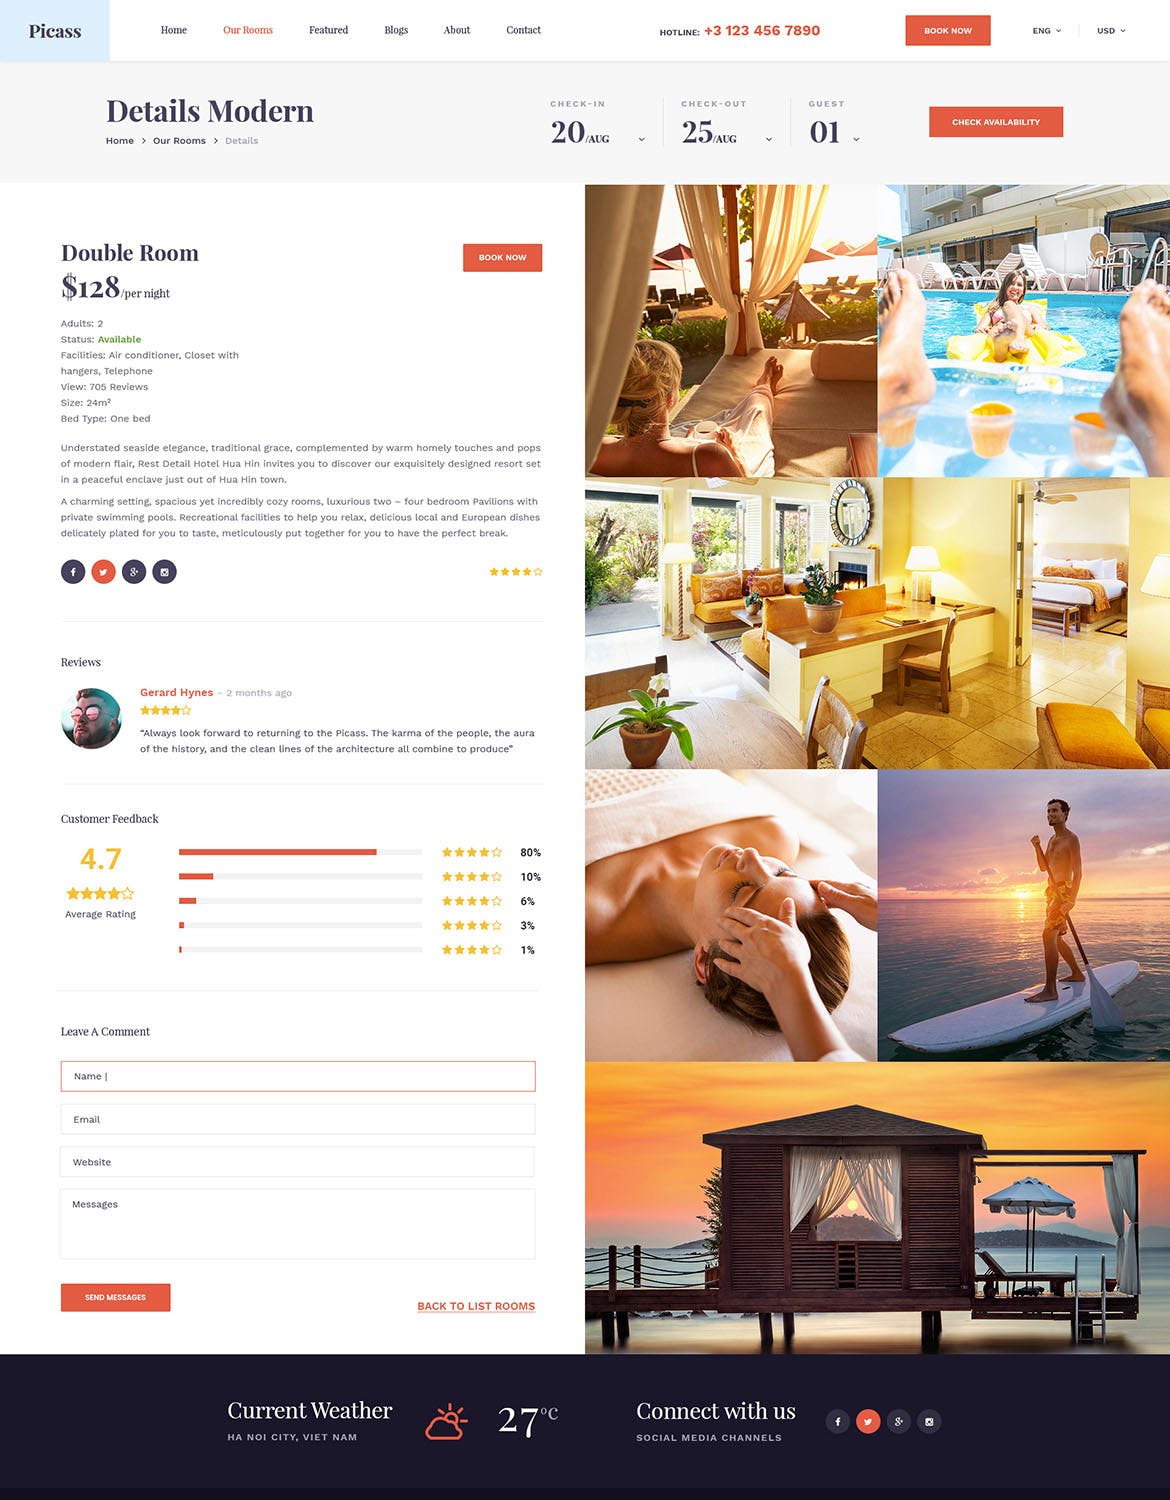 酒店预订网站设计PSD模板 Picass | Hotel PSD Templates插图(7)